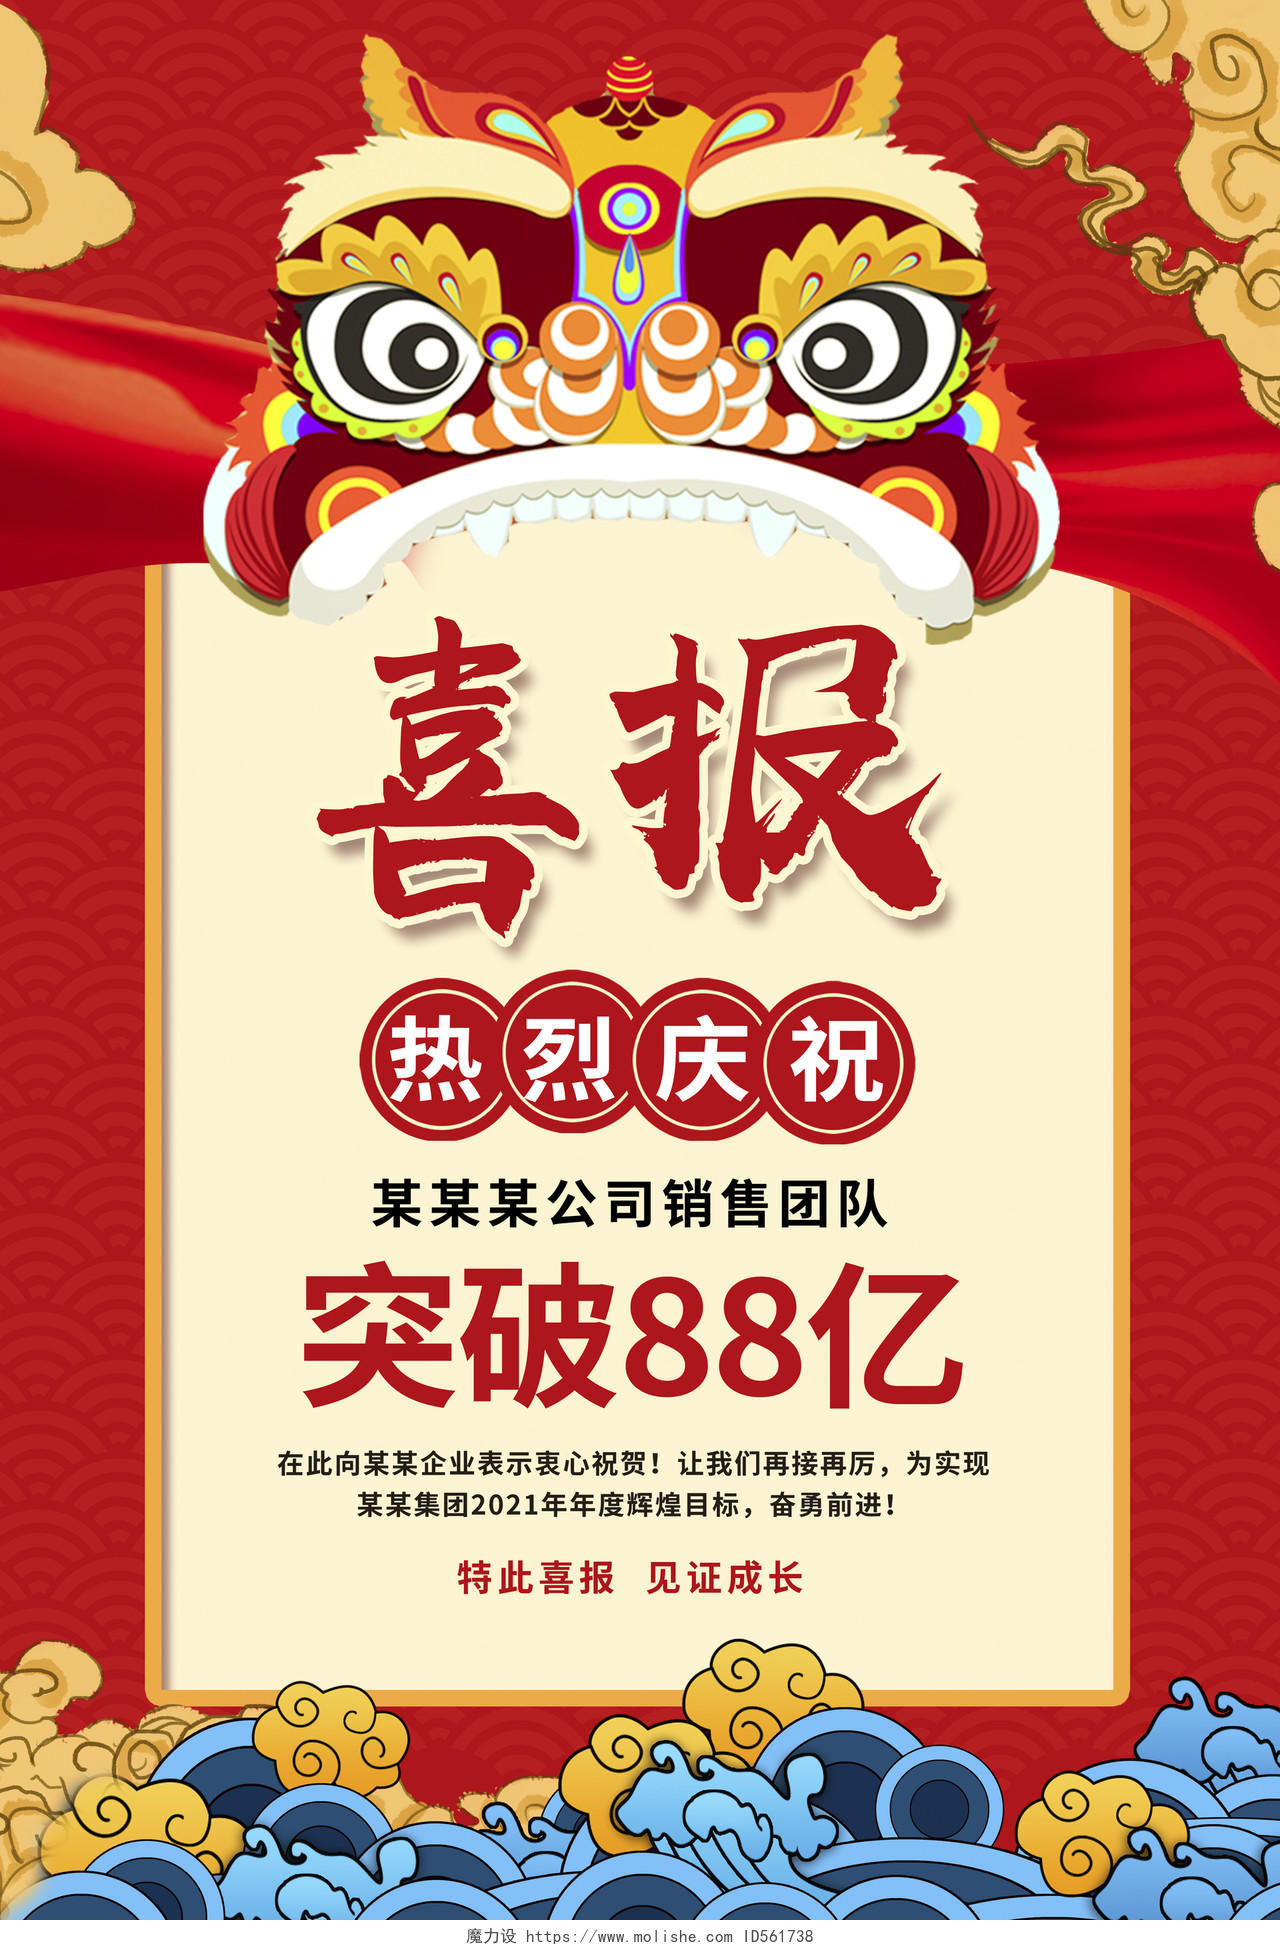 红色中国风喜报销售战报宣传海报设计2021新年牛年喜报